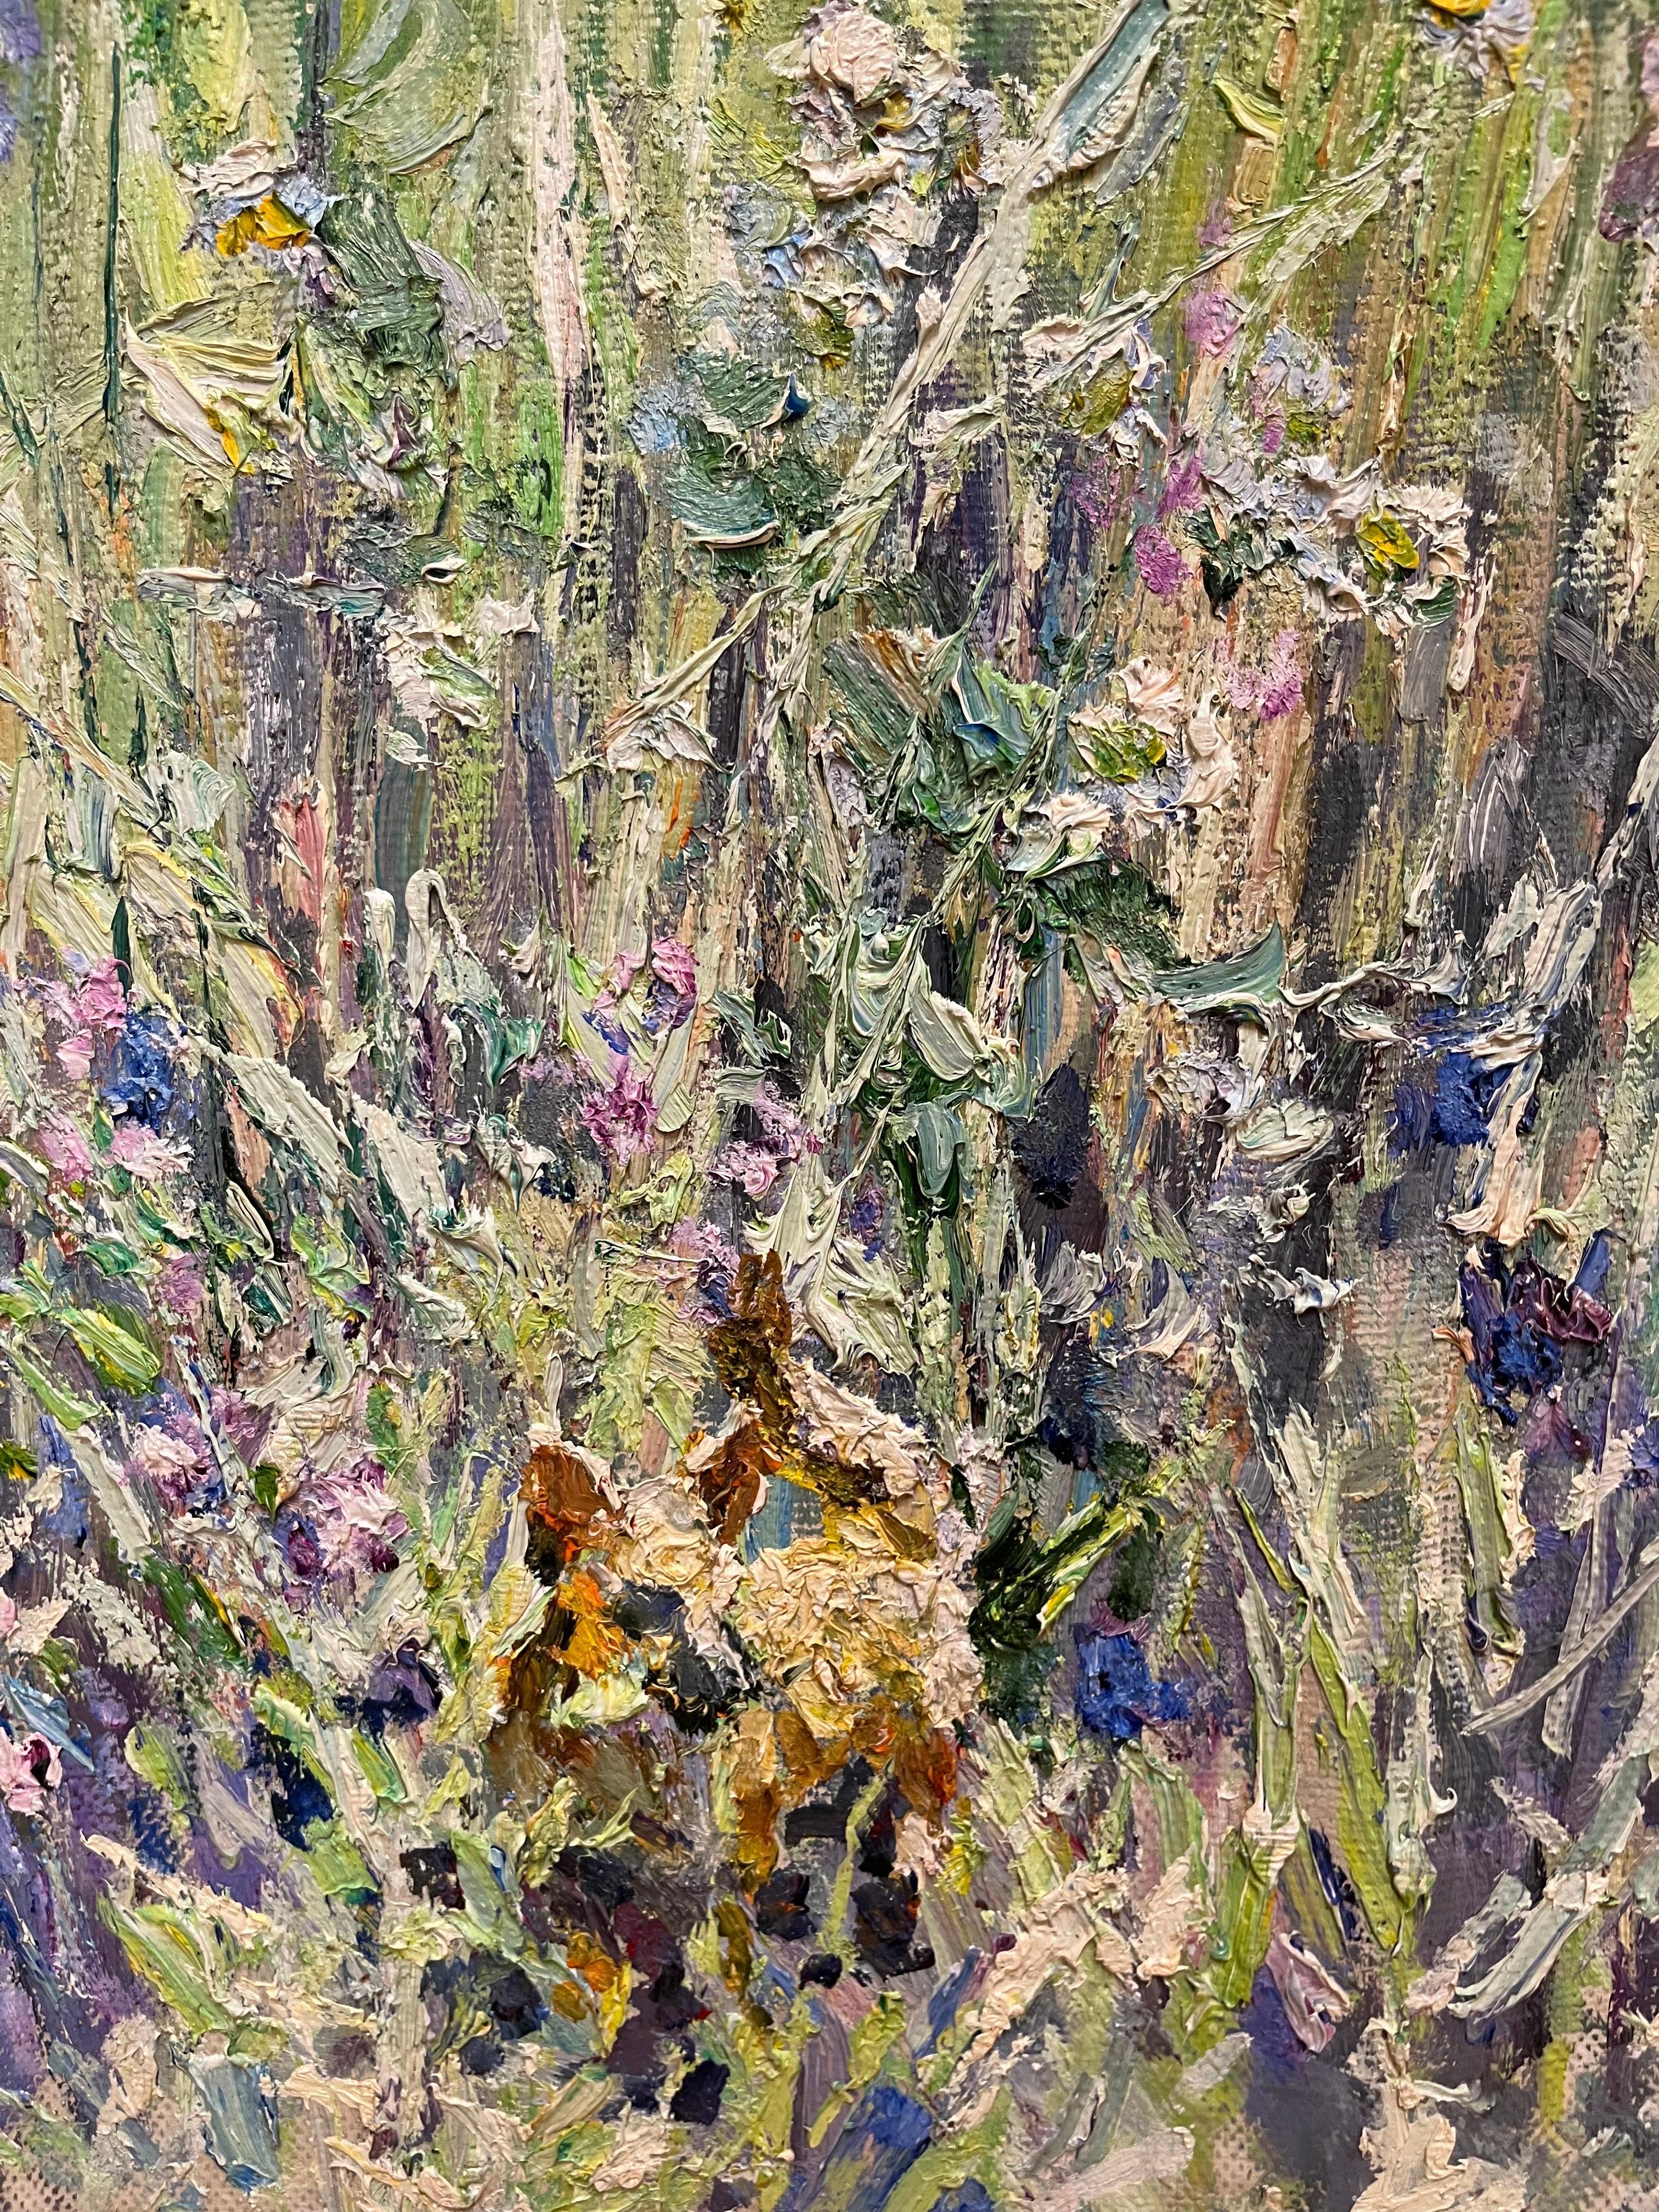 « Eye in bloom », jeune enfant dans un champ fleuri, huile cm. 120 x 91,  1999 - Impressionnisme Painting par Georgij Moroz